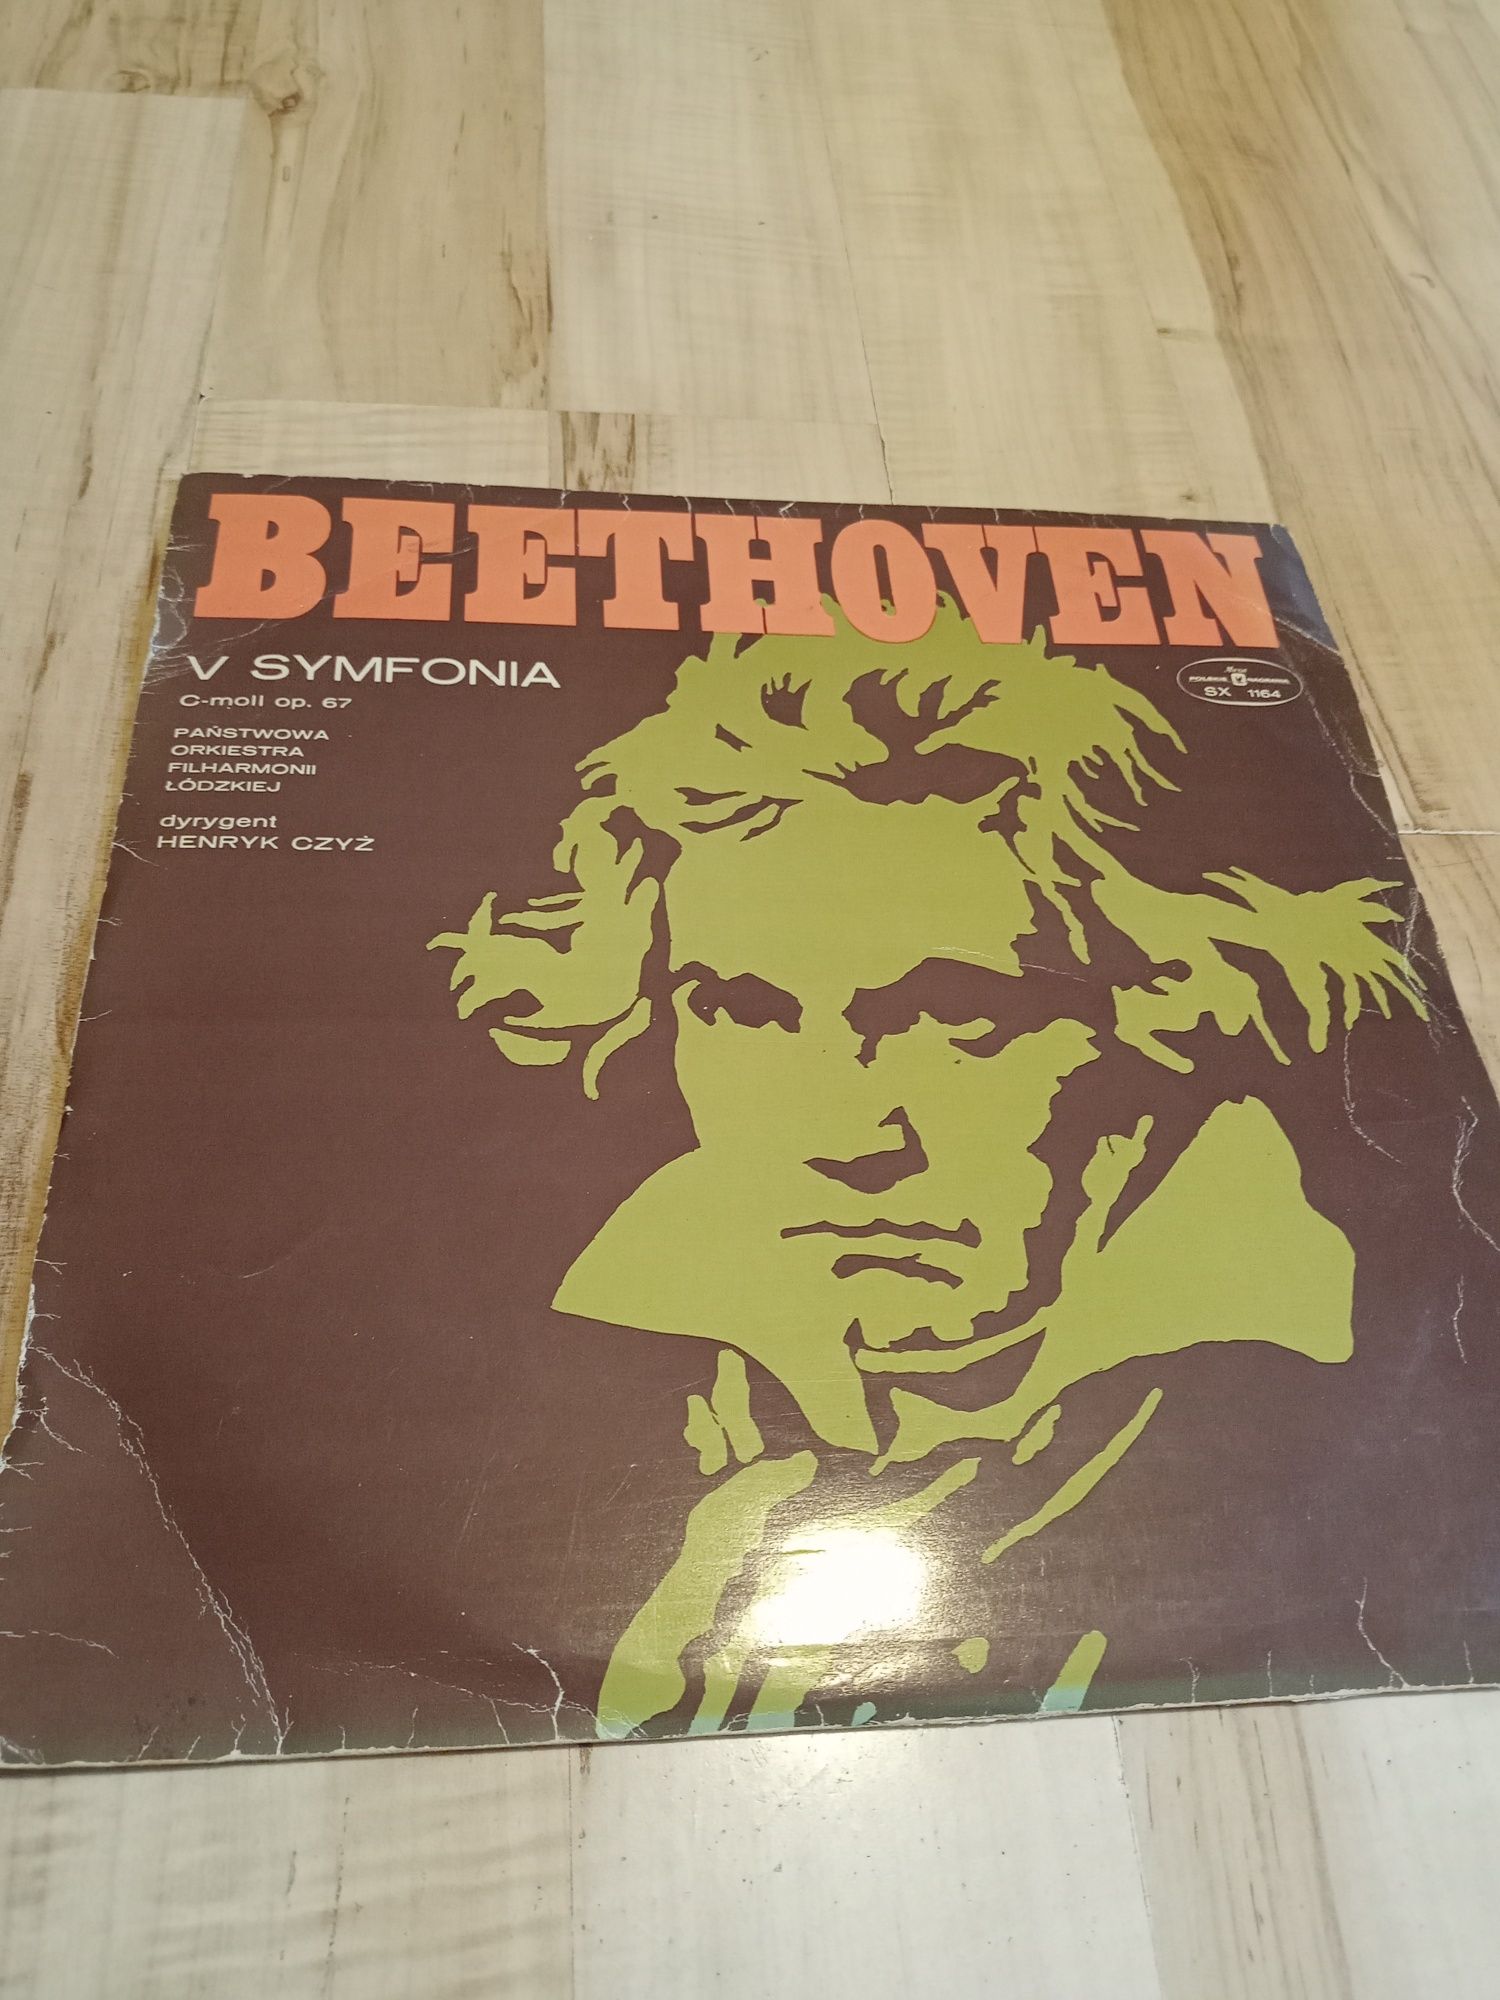 Beethoven V symfonia, płyta winylowa